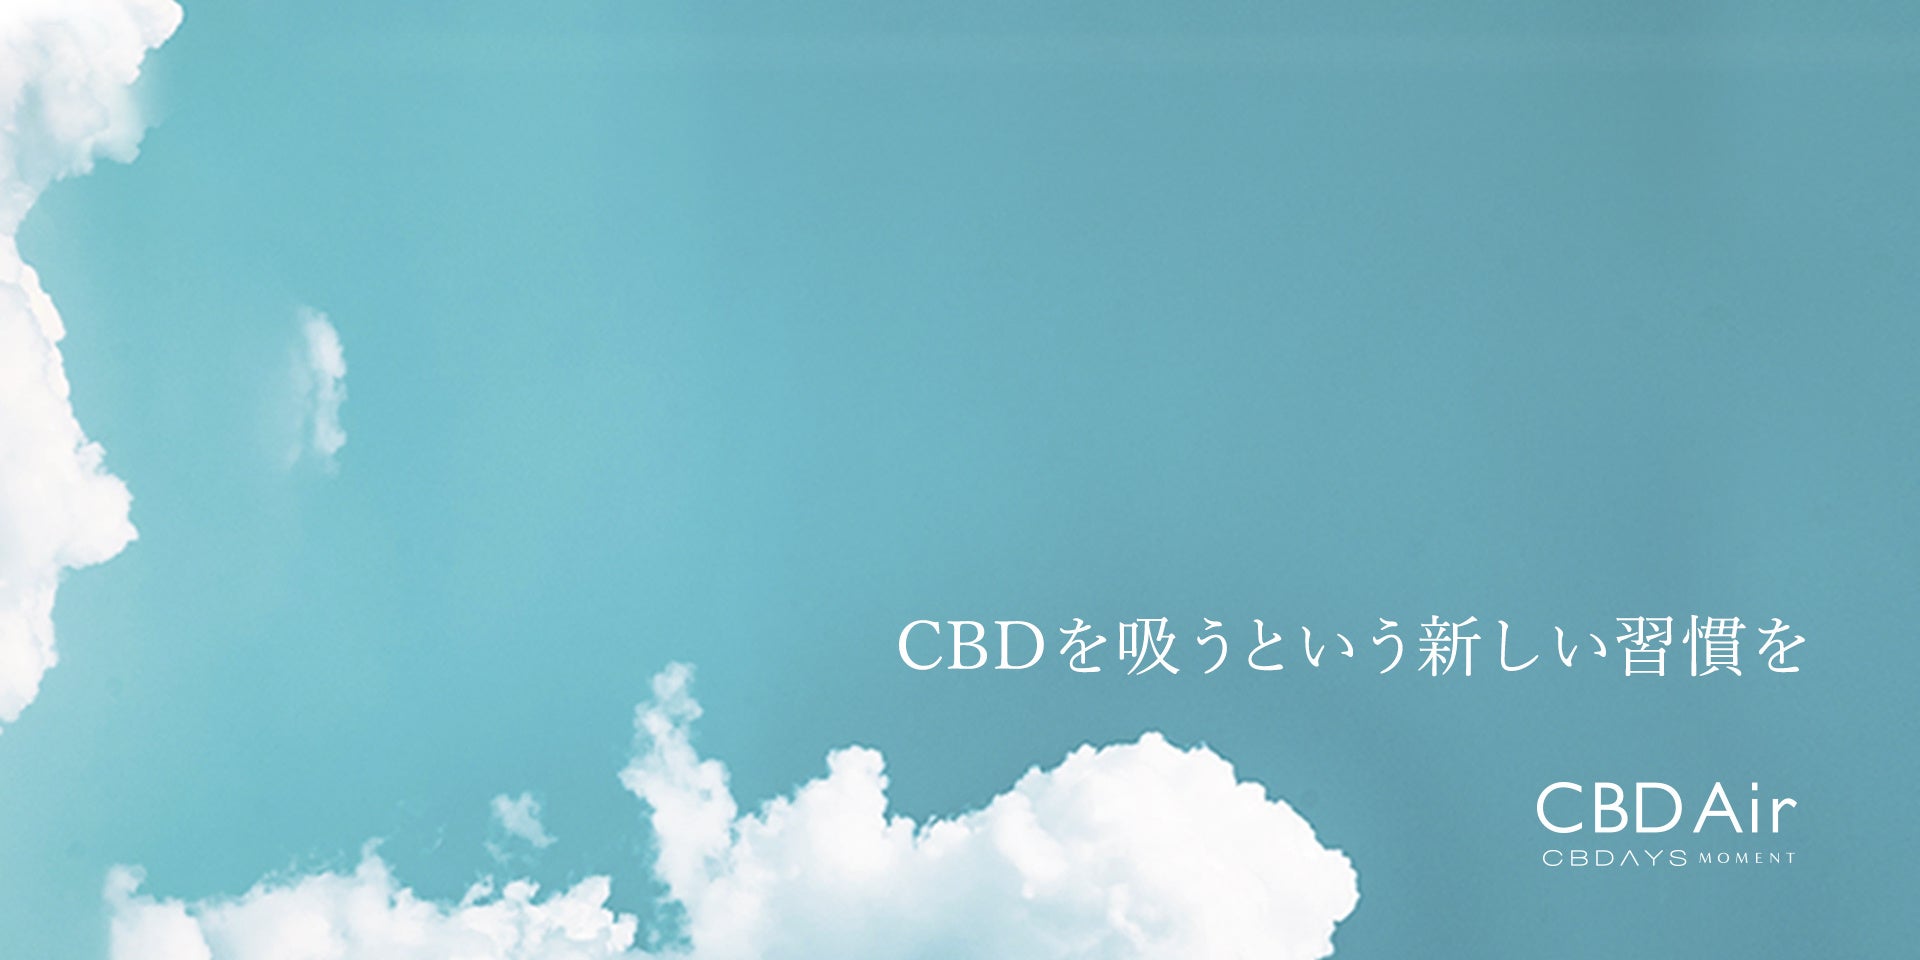 CBDを吸うという新しい習慣を。日本発CBDブランド「CBDAYS MOMENT」から、シグネチャーアイテムのドロップオイルをベースにした“吸うCBD”「CBD Air」が新登場！